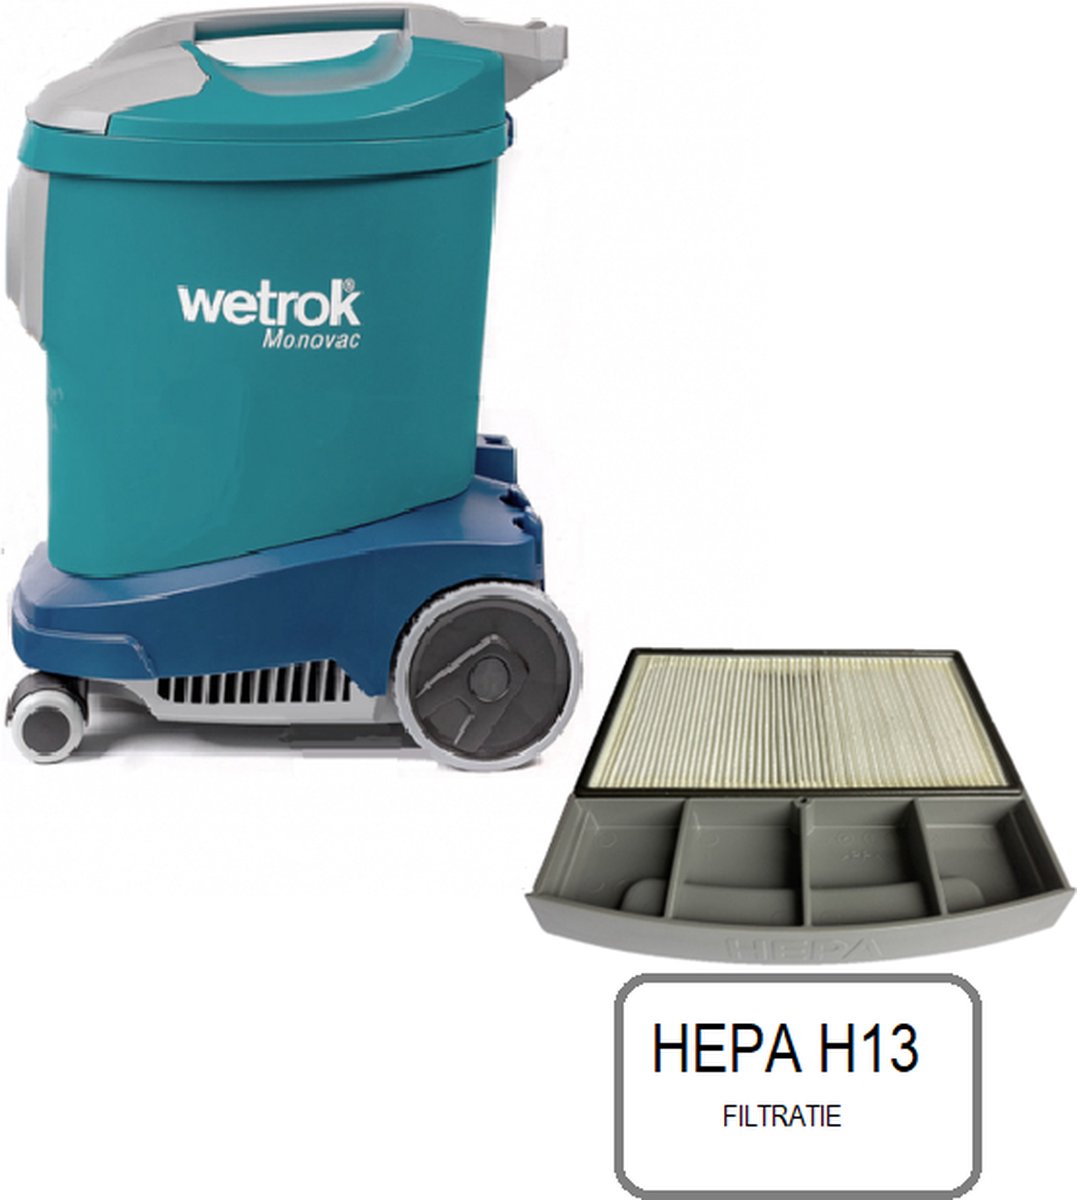 Wetrok Monovac Comfort 11 met HEPA H13 filter professionele stofzuiger. (factuur wordt meegezonden in de doos)